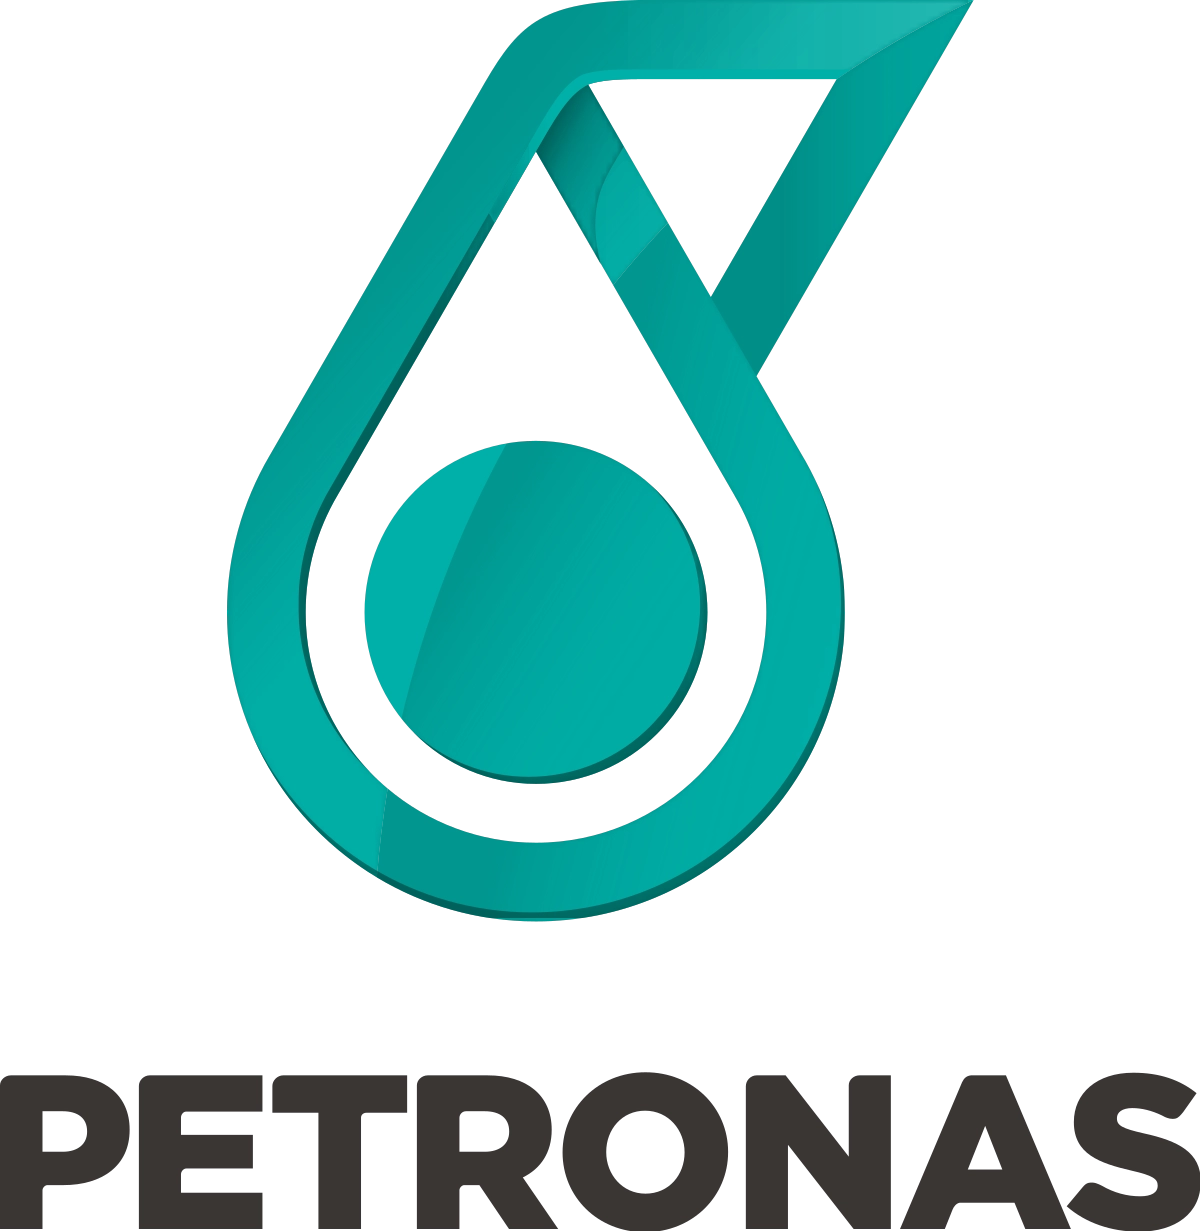 Foggy Petronas